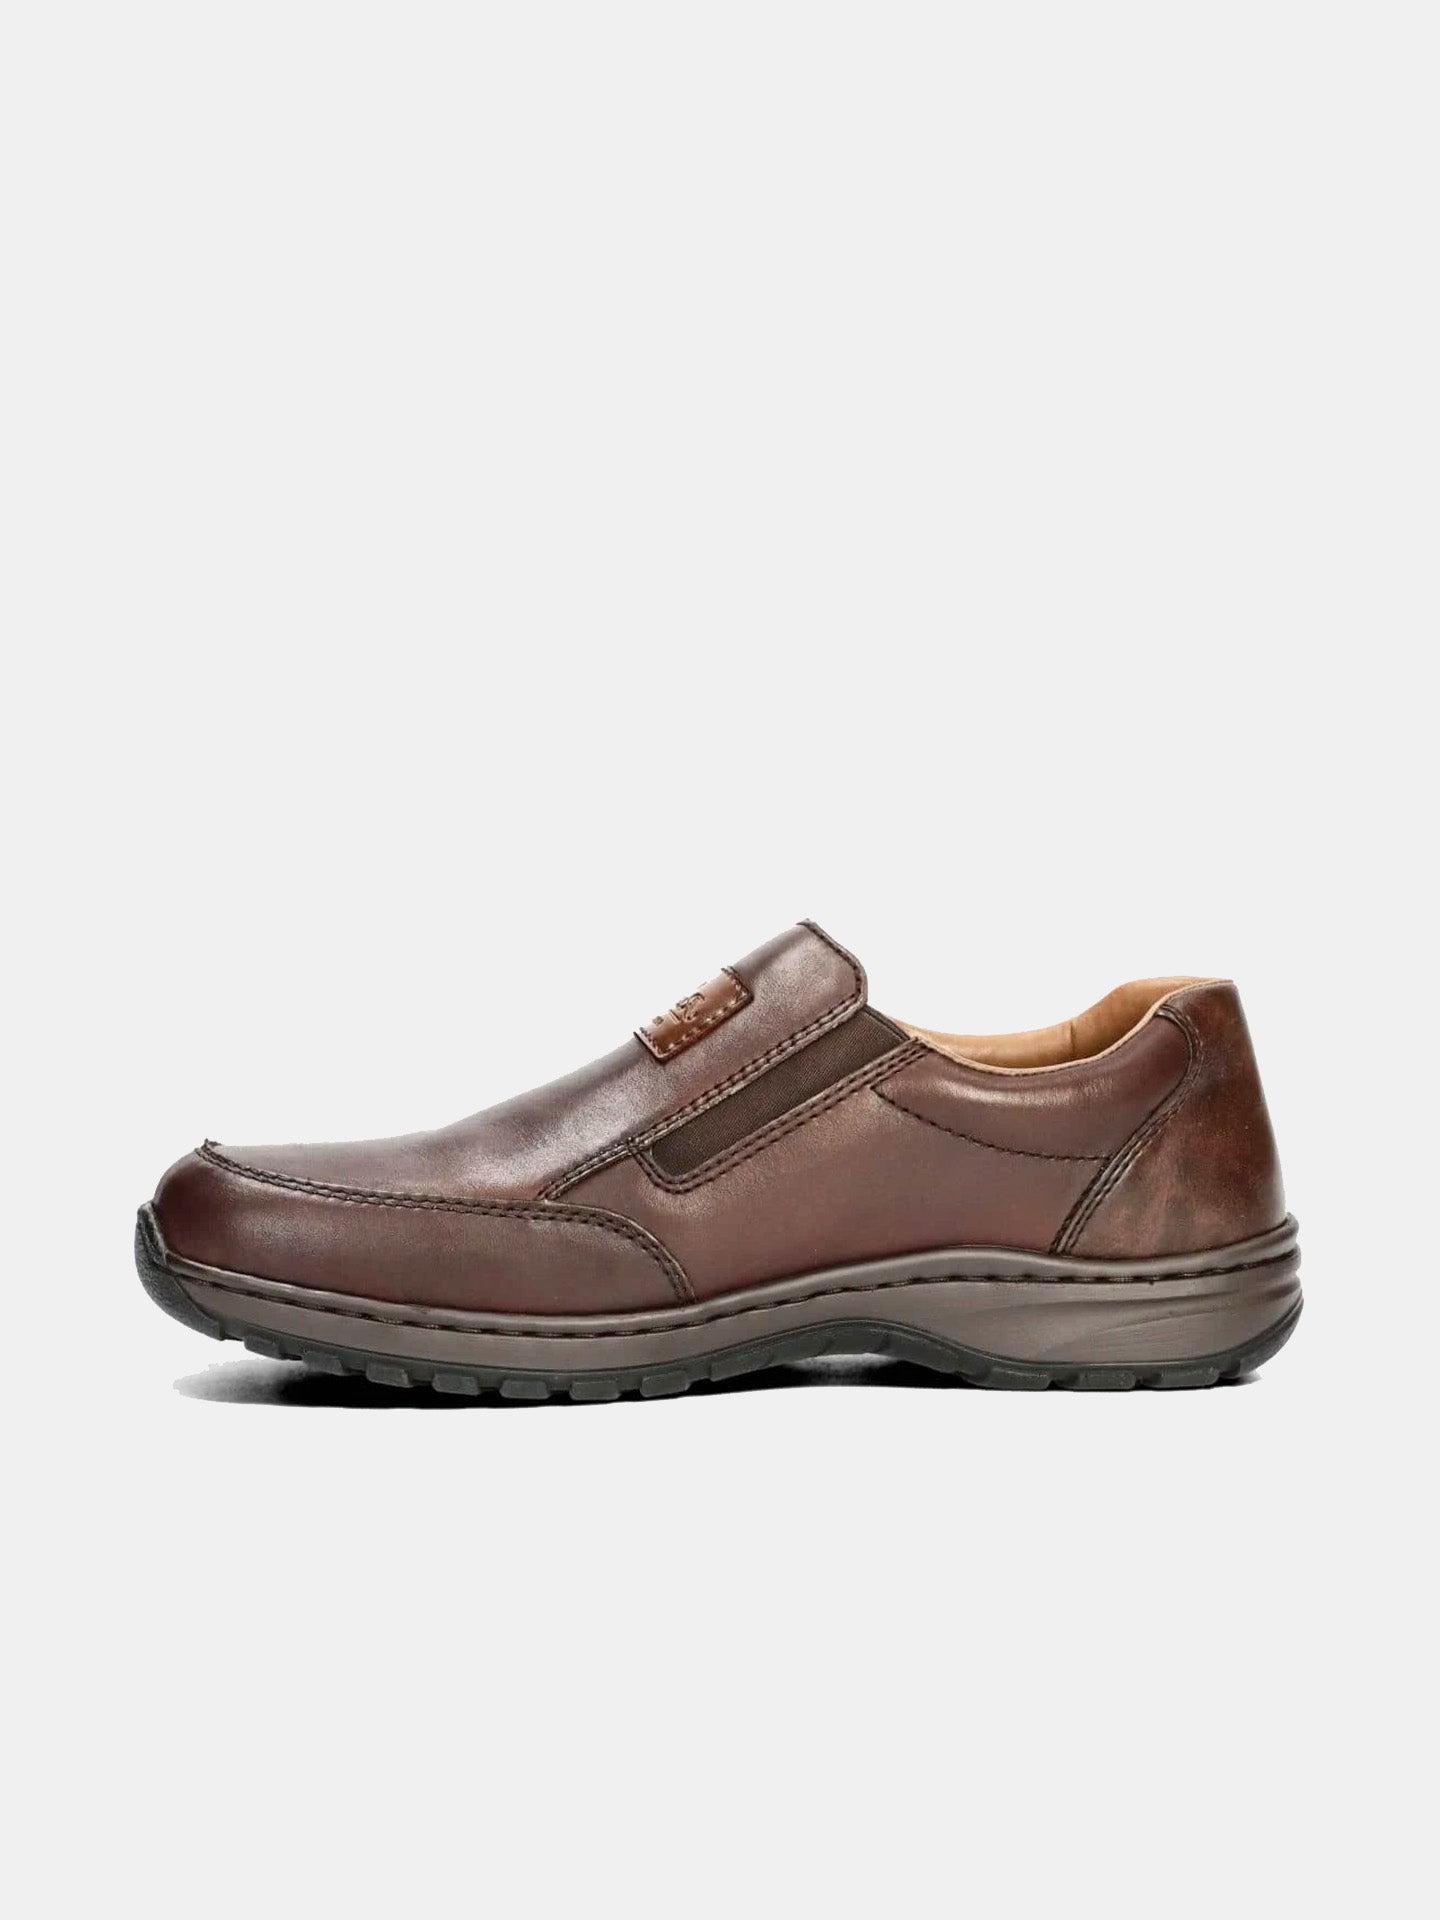 Rieker 03354 Men's Casual Shoes